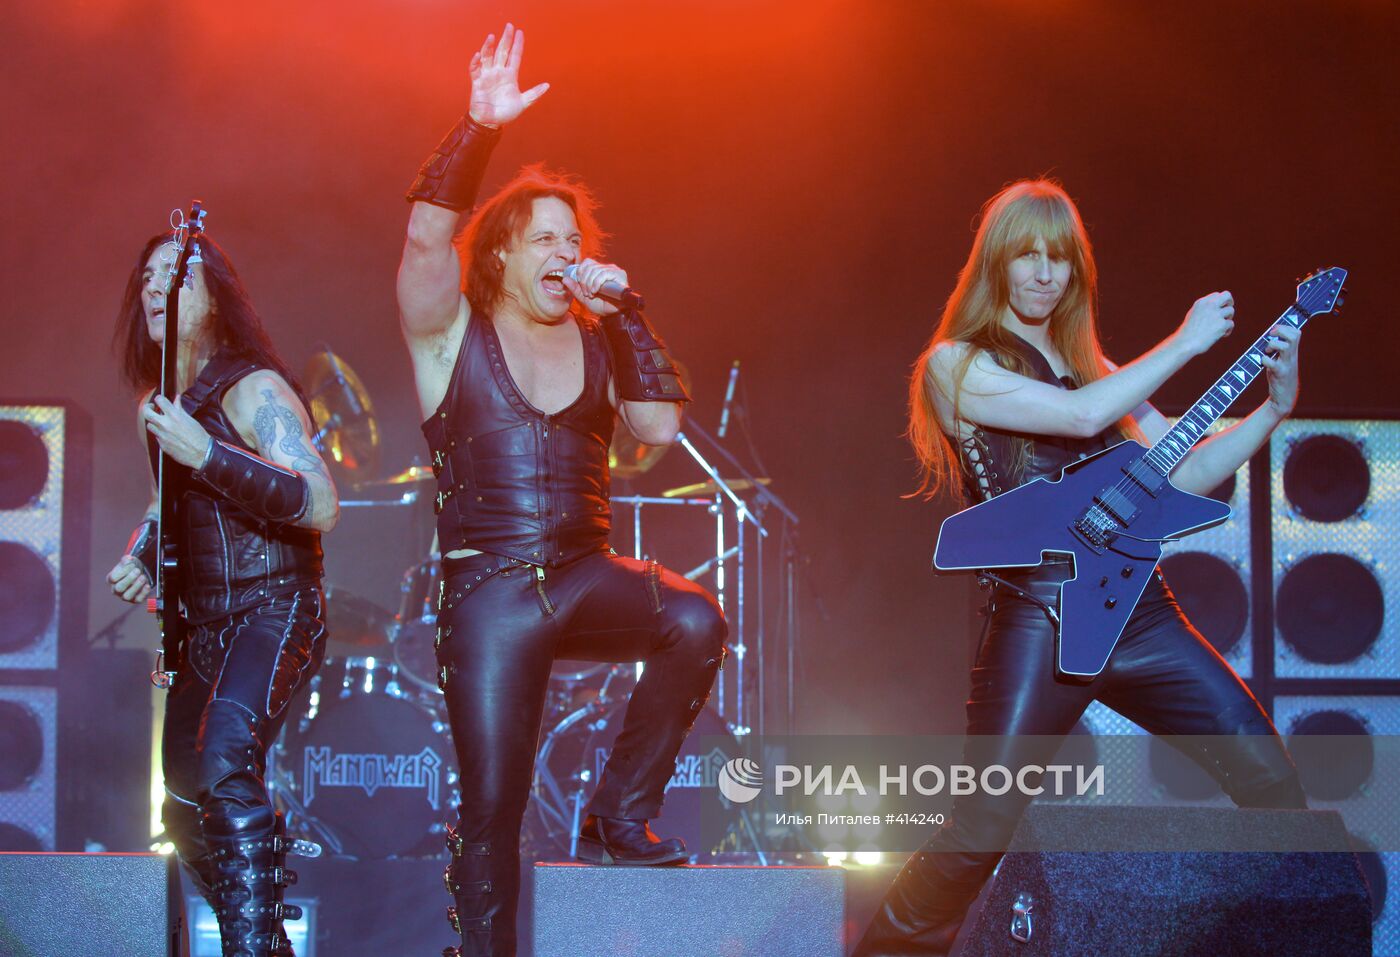 Концерт группы Manowar прошел в Москве